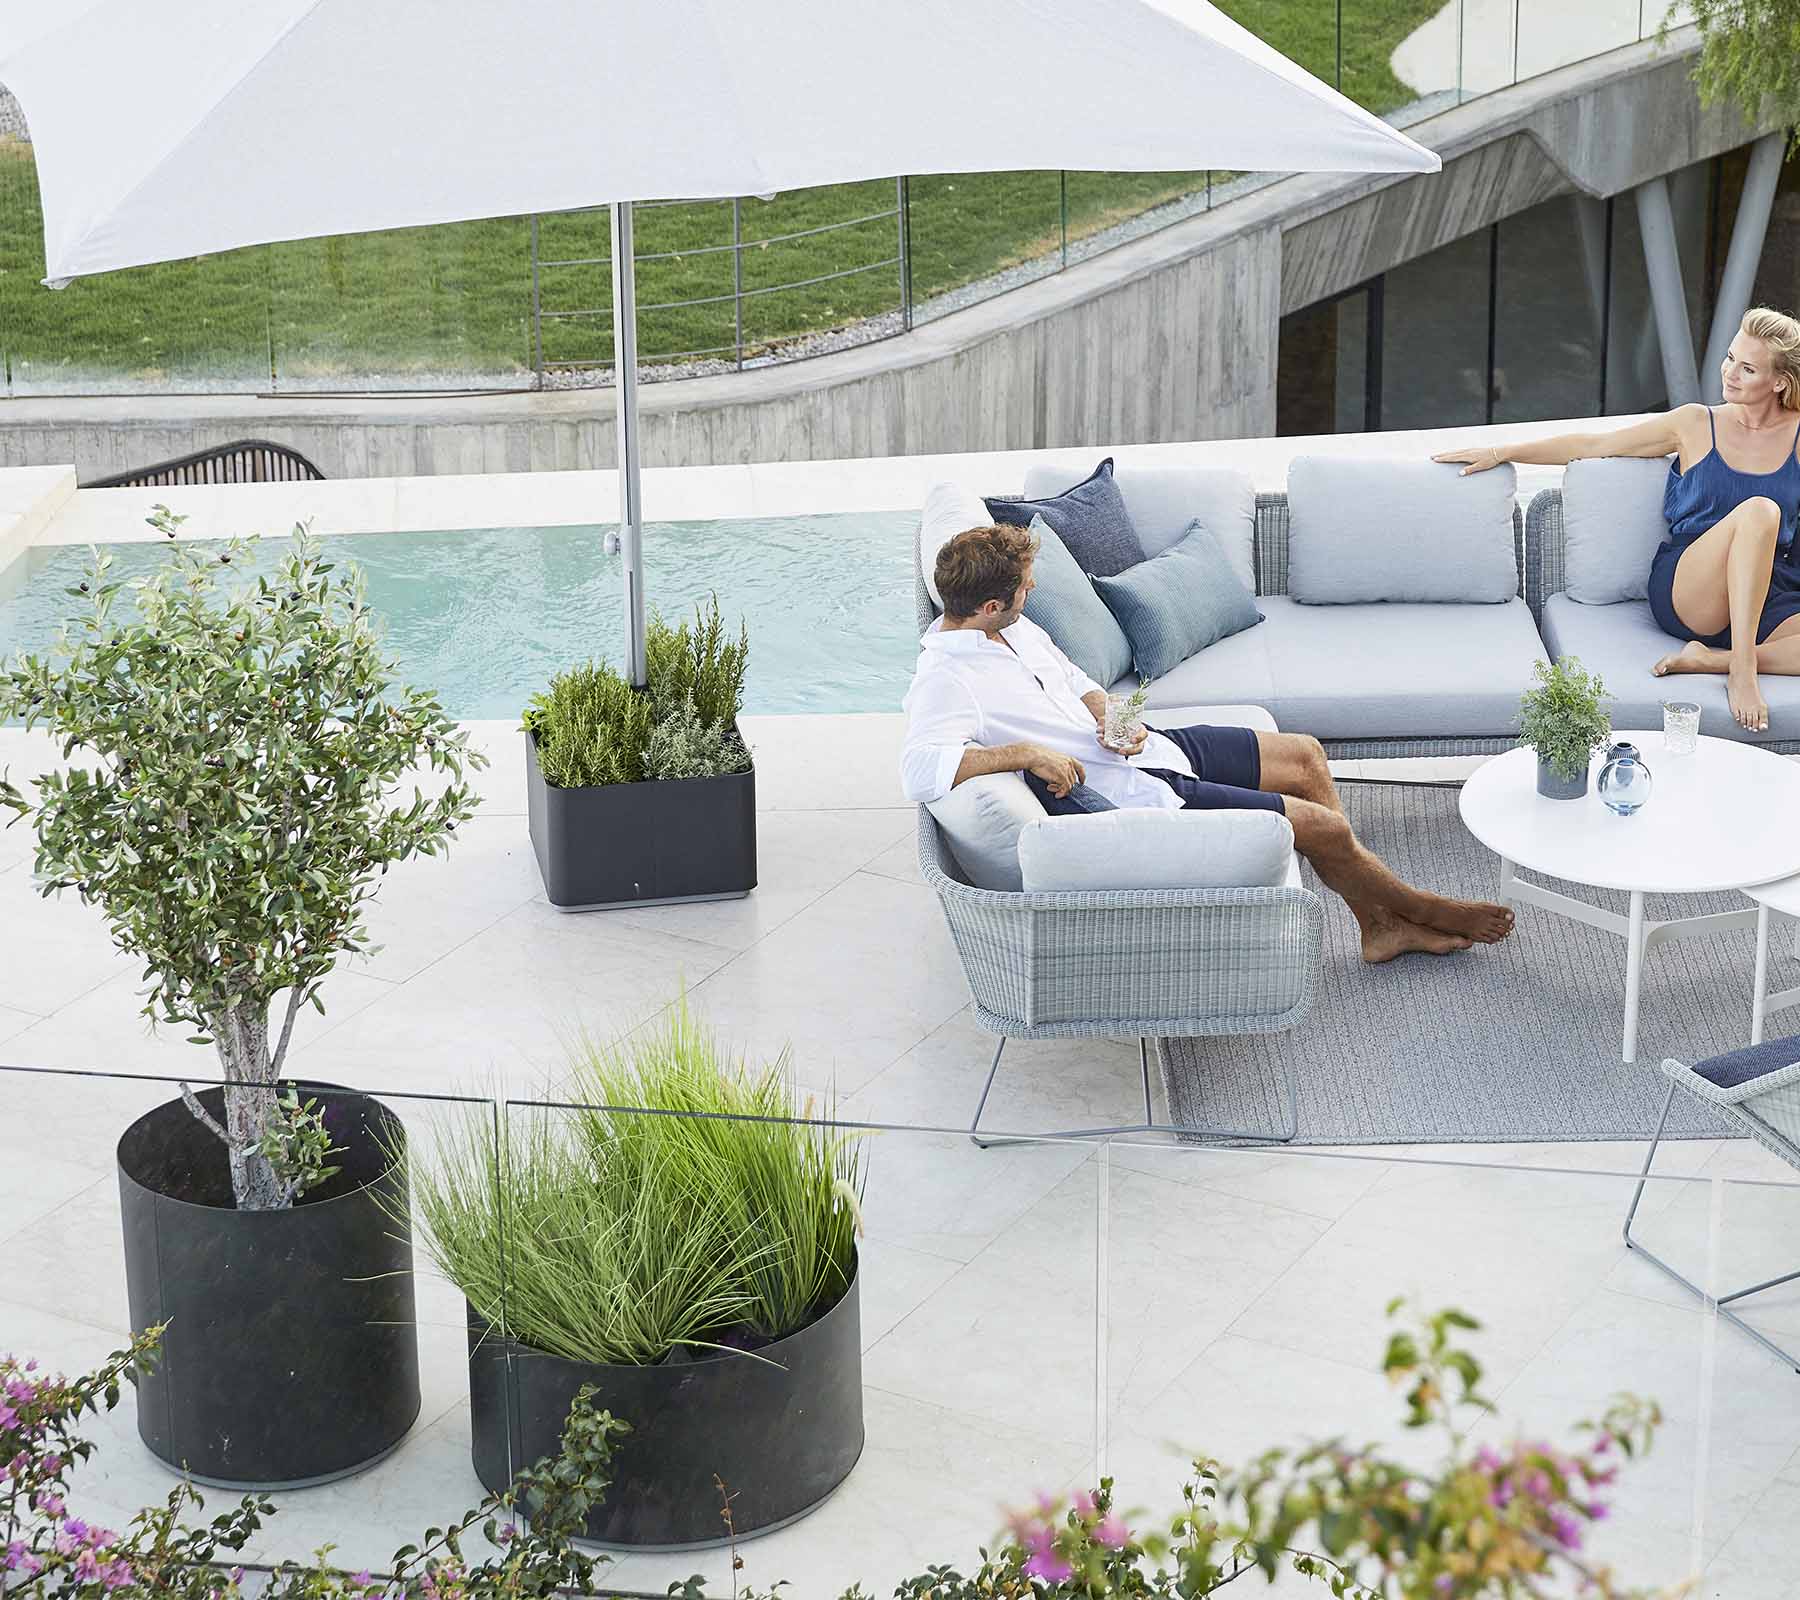 Cane-Line Denmark Outdoor Cushions Cane-Line - Grow planter, medium | 5772